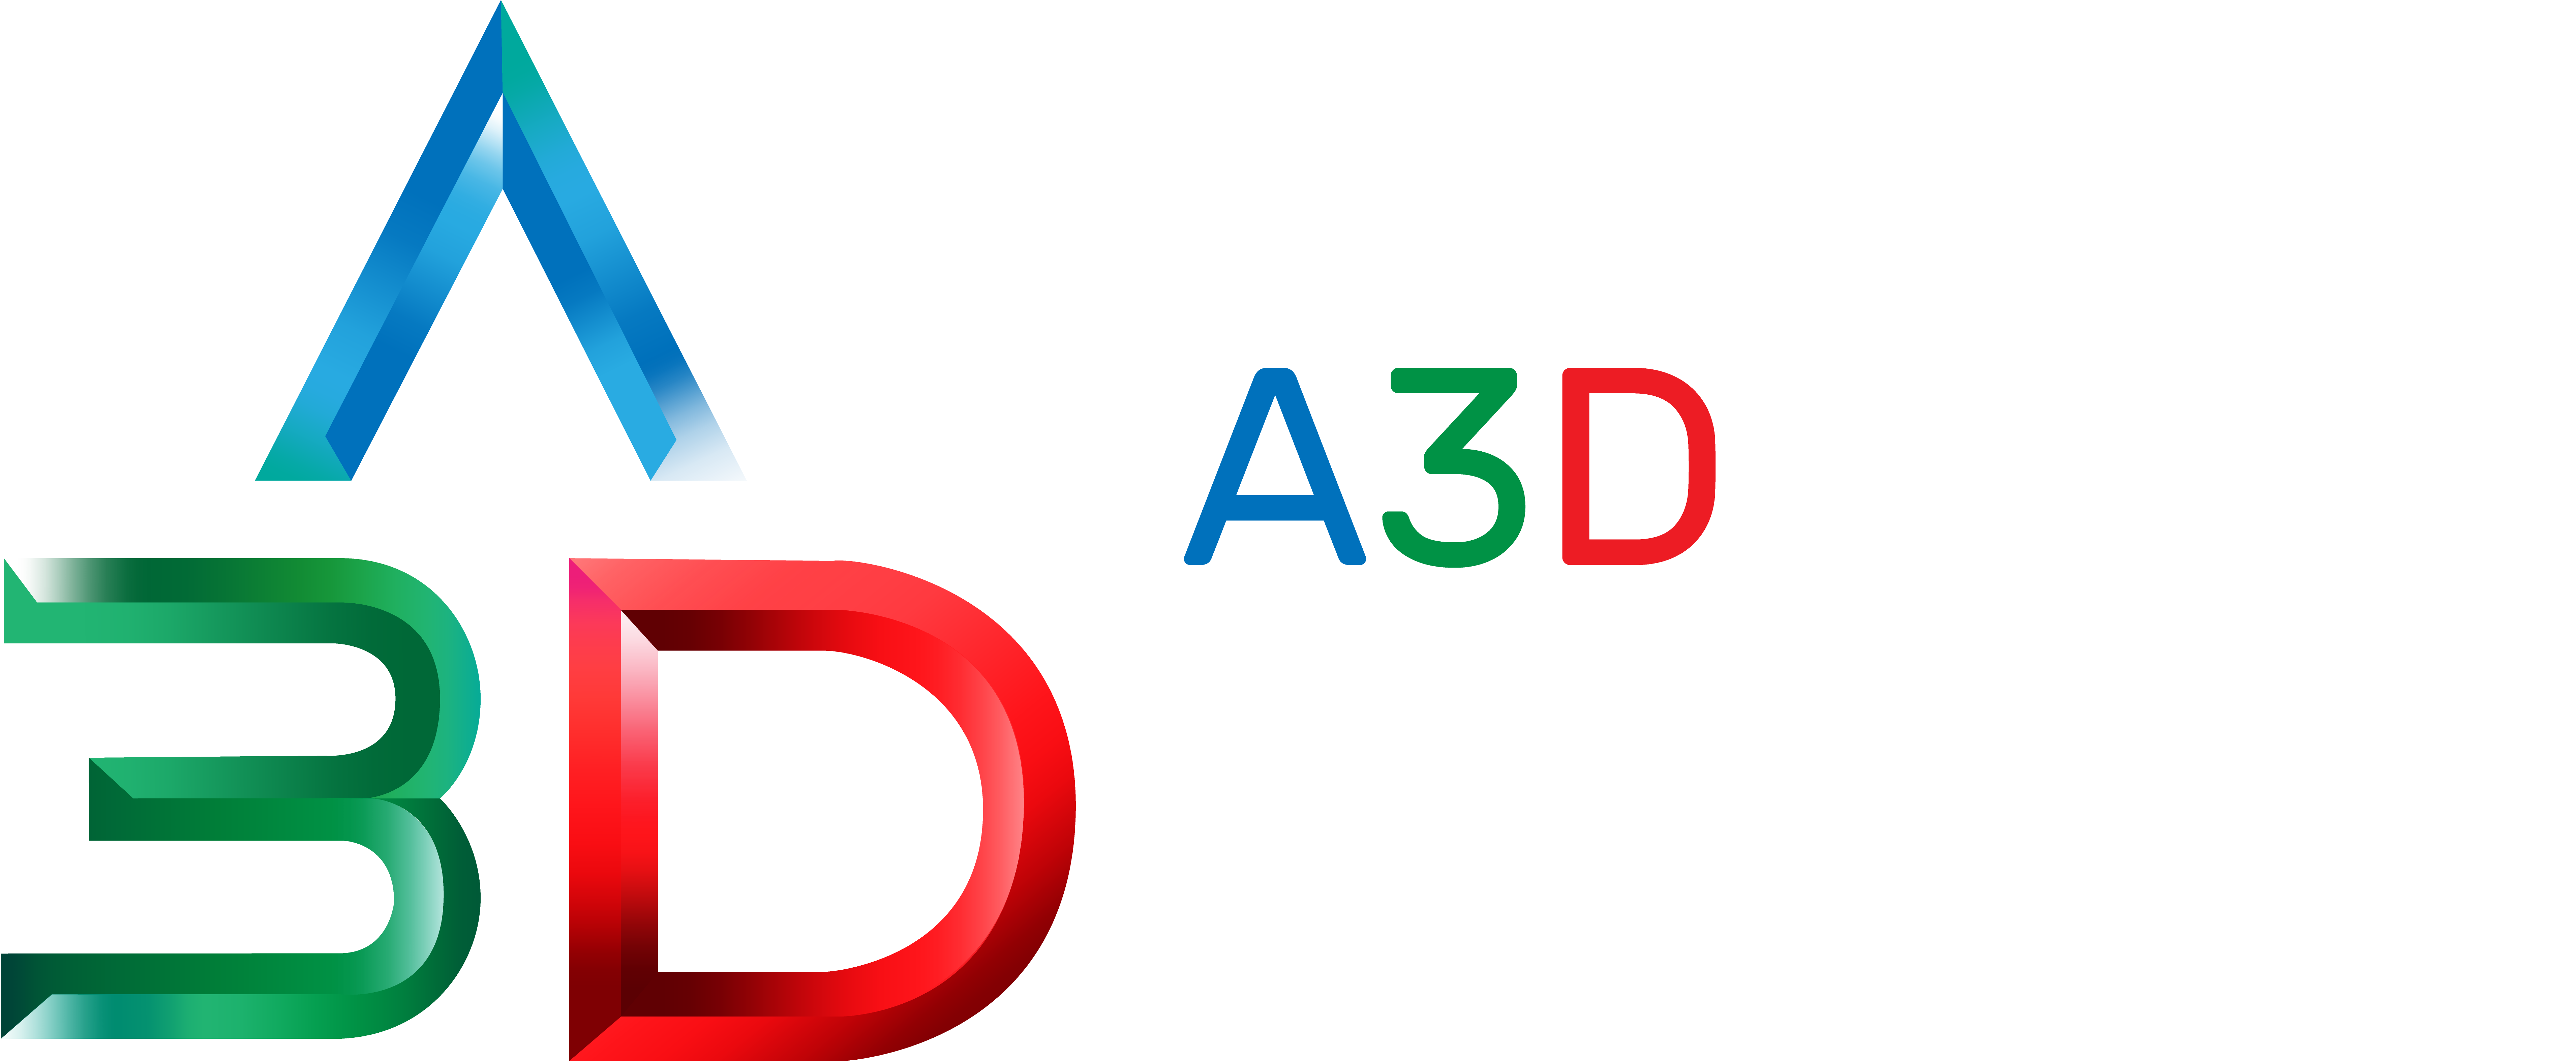 A3Dnation_logo_descrip-02